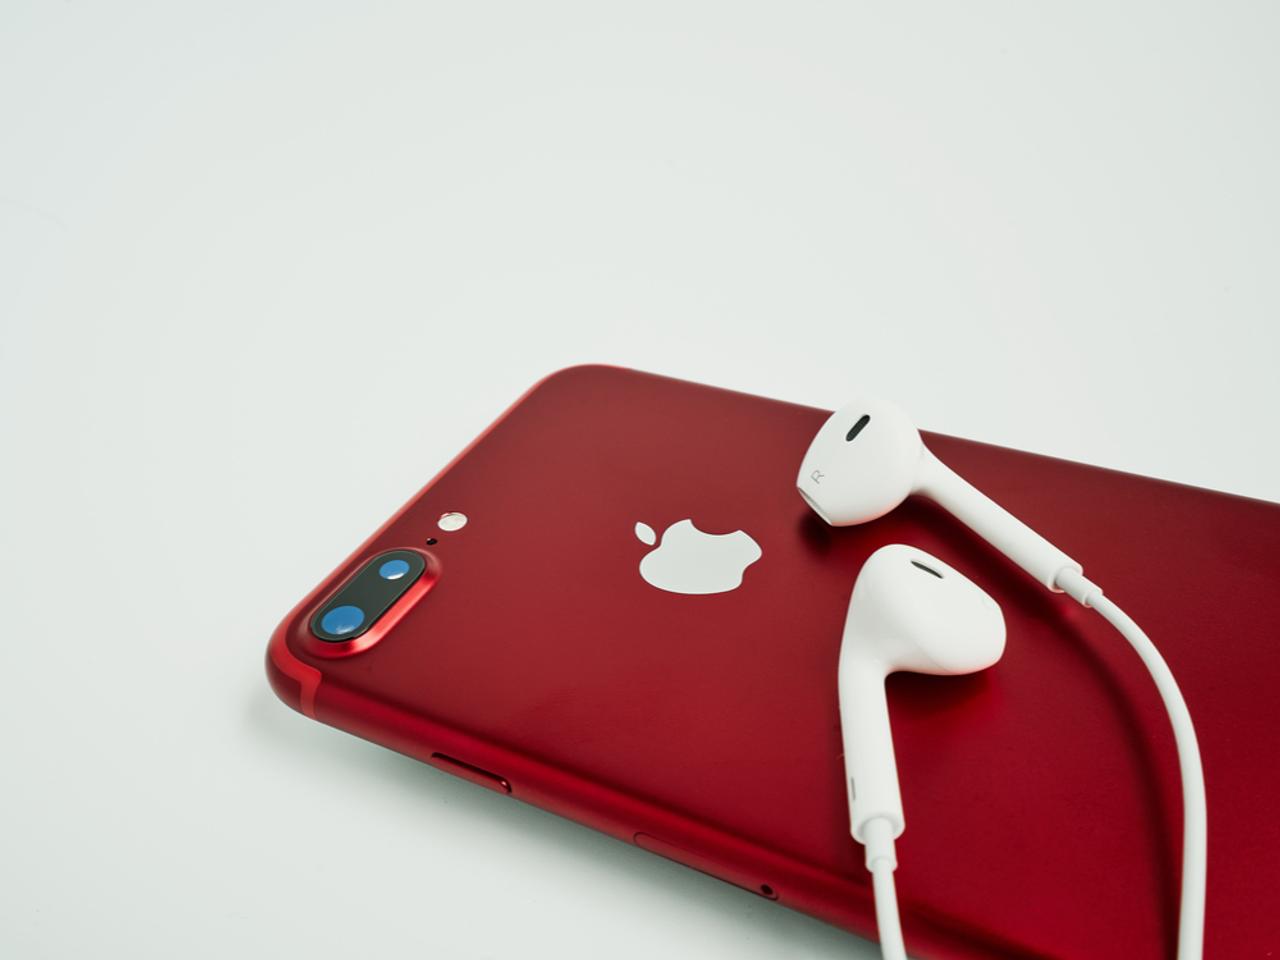 (PRODUCT)RED？ 赤いモデルのiPhoneが今月発売されるかもしれない